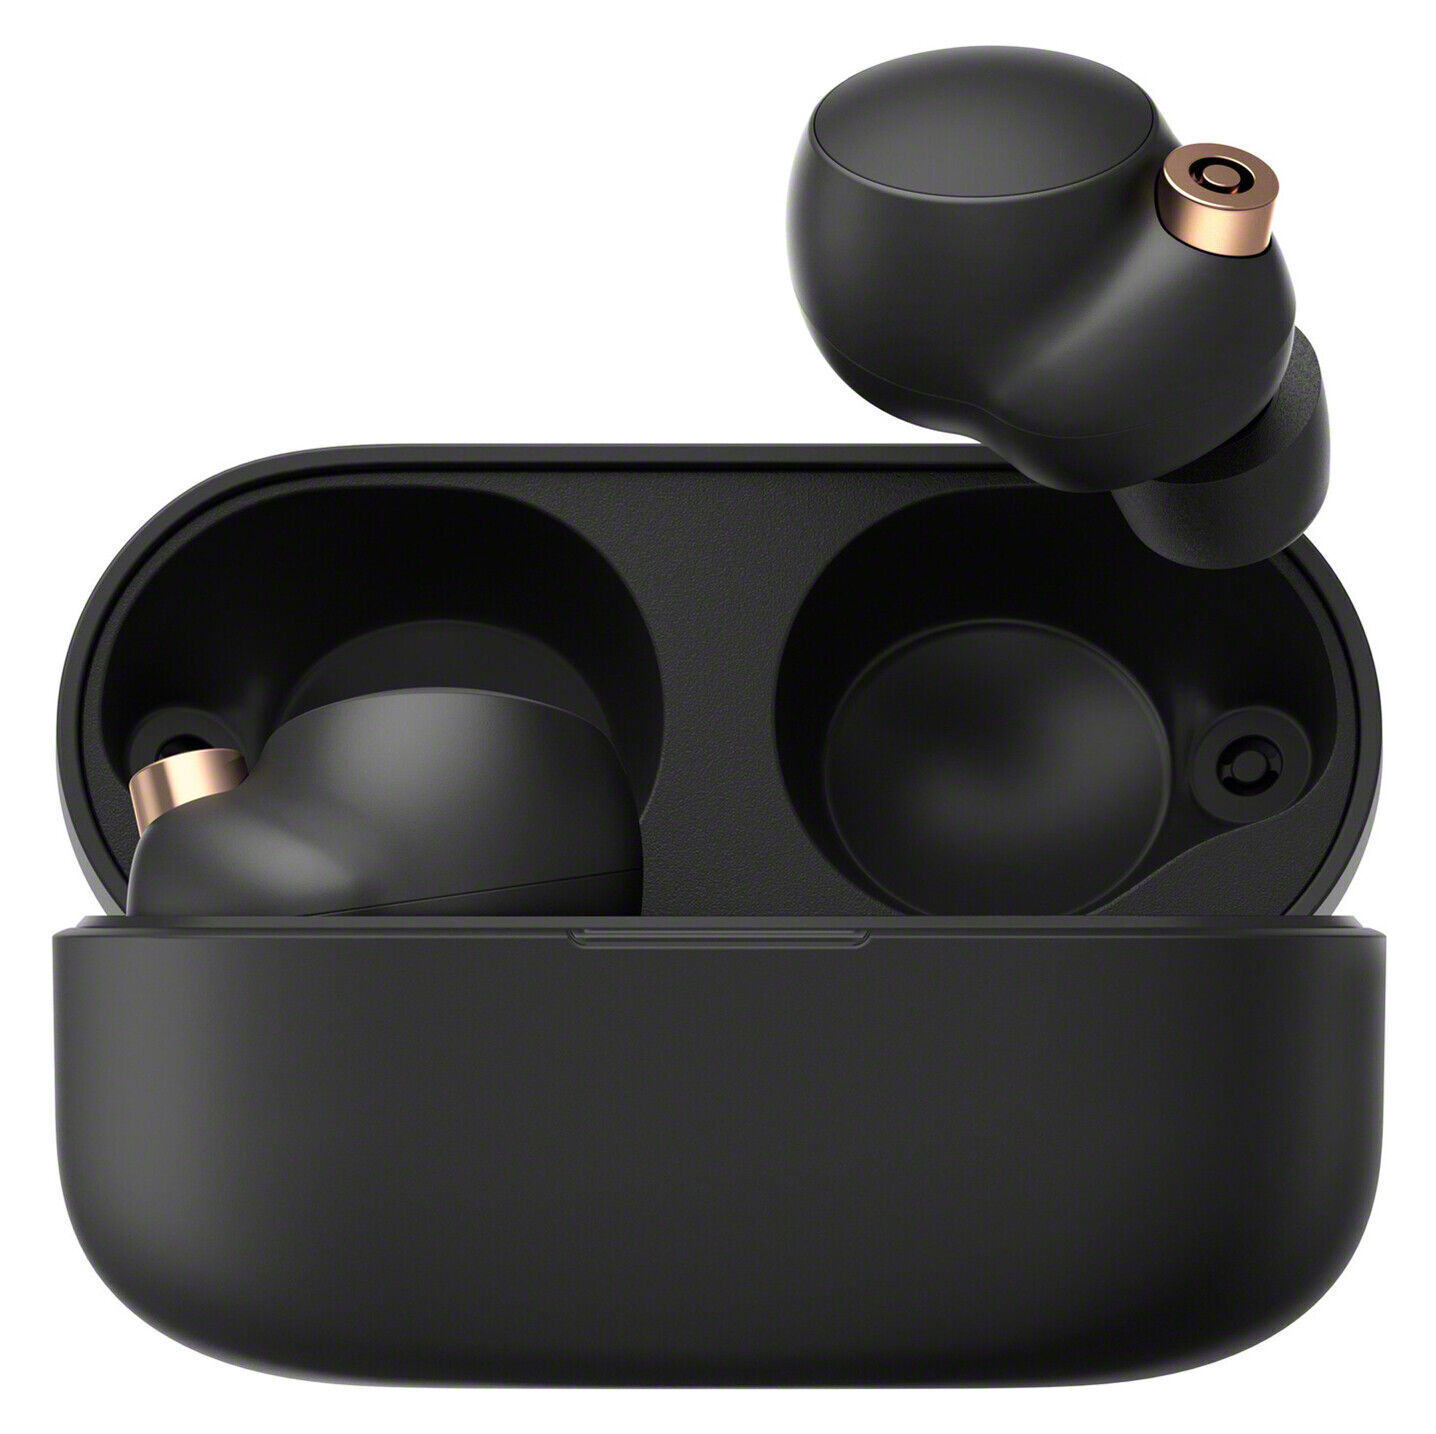 Sony WF-1000XM4 Wireless In-Ear Headset - Black for sale online | eBay